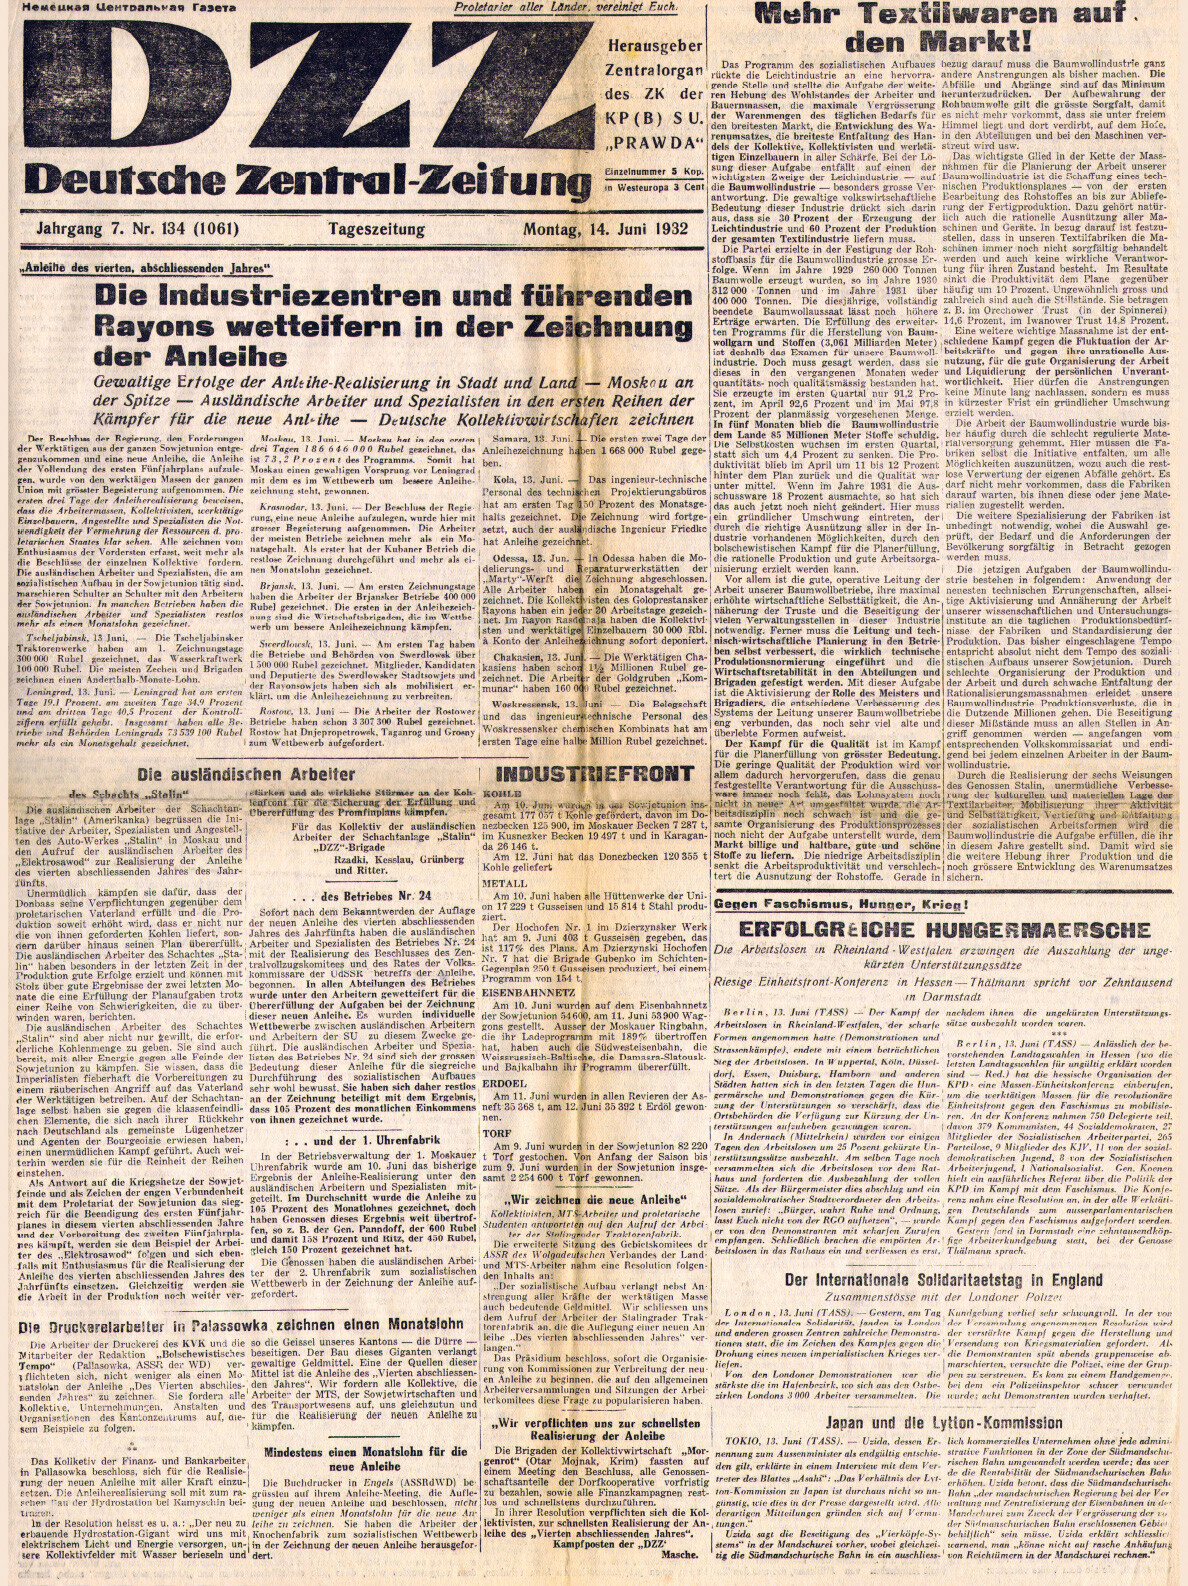 Deutsche Zentral-Zeitung (Ausgabe vom 14. Juni 1932)